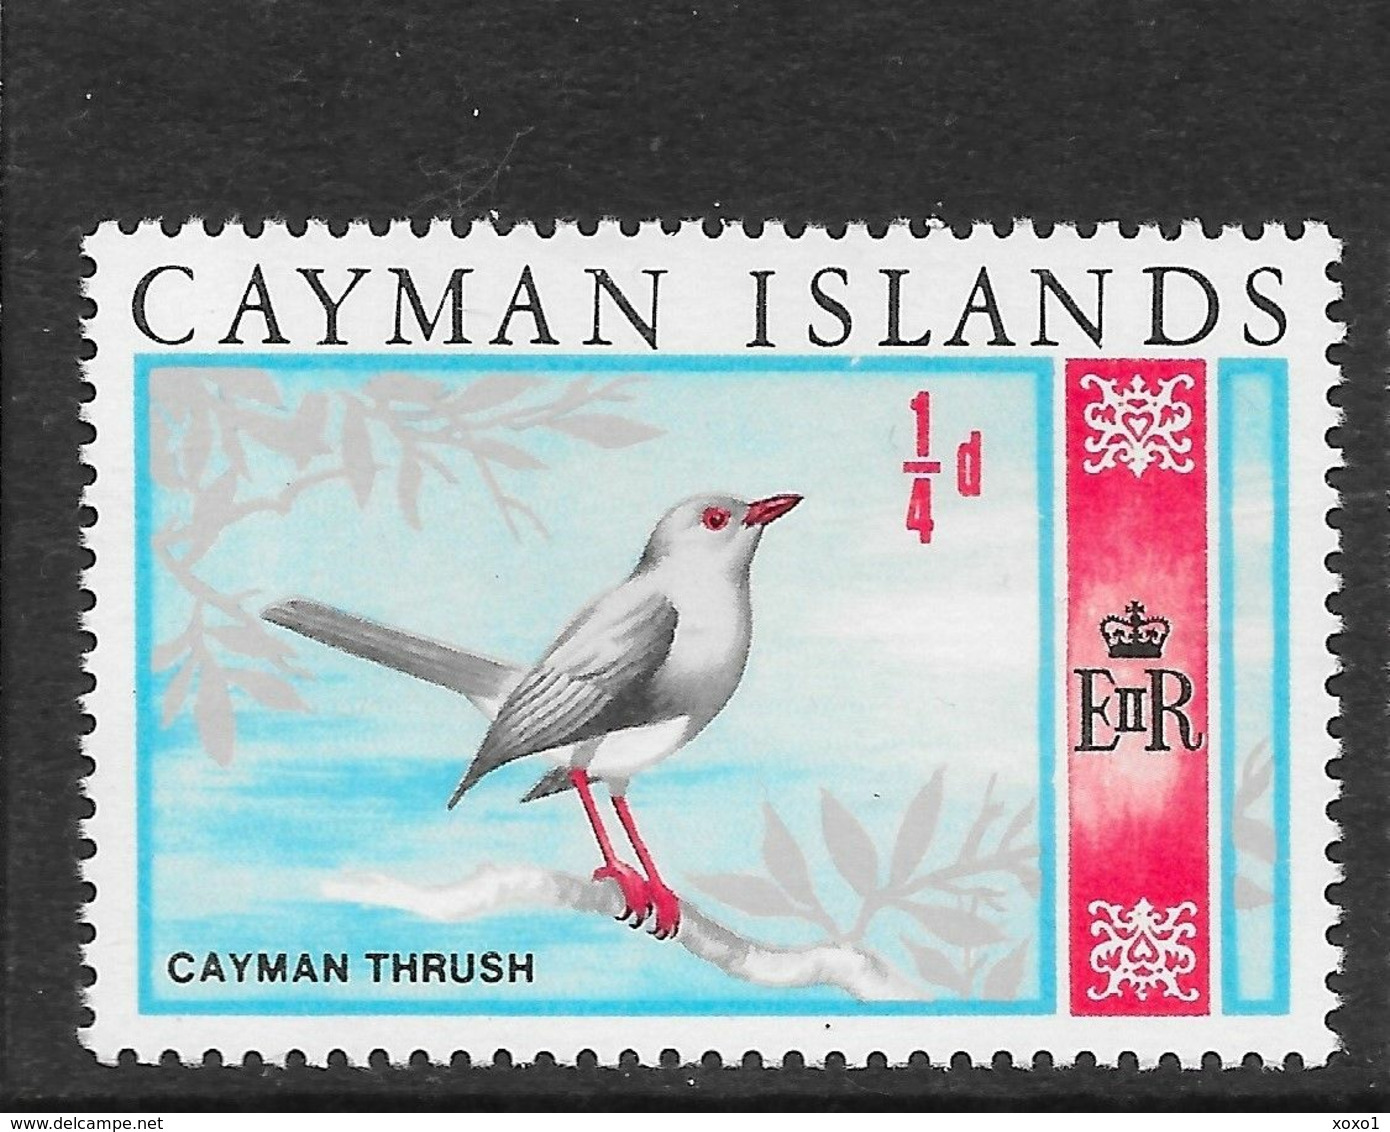 Cayman Islands 1969 MiNr. 211 Kaiman Birds (an Extinct) Grand Cayman Thrush 1v MNH** 0,30 € - Kaaiman Eilanden